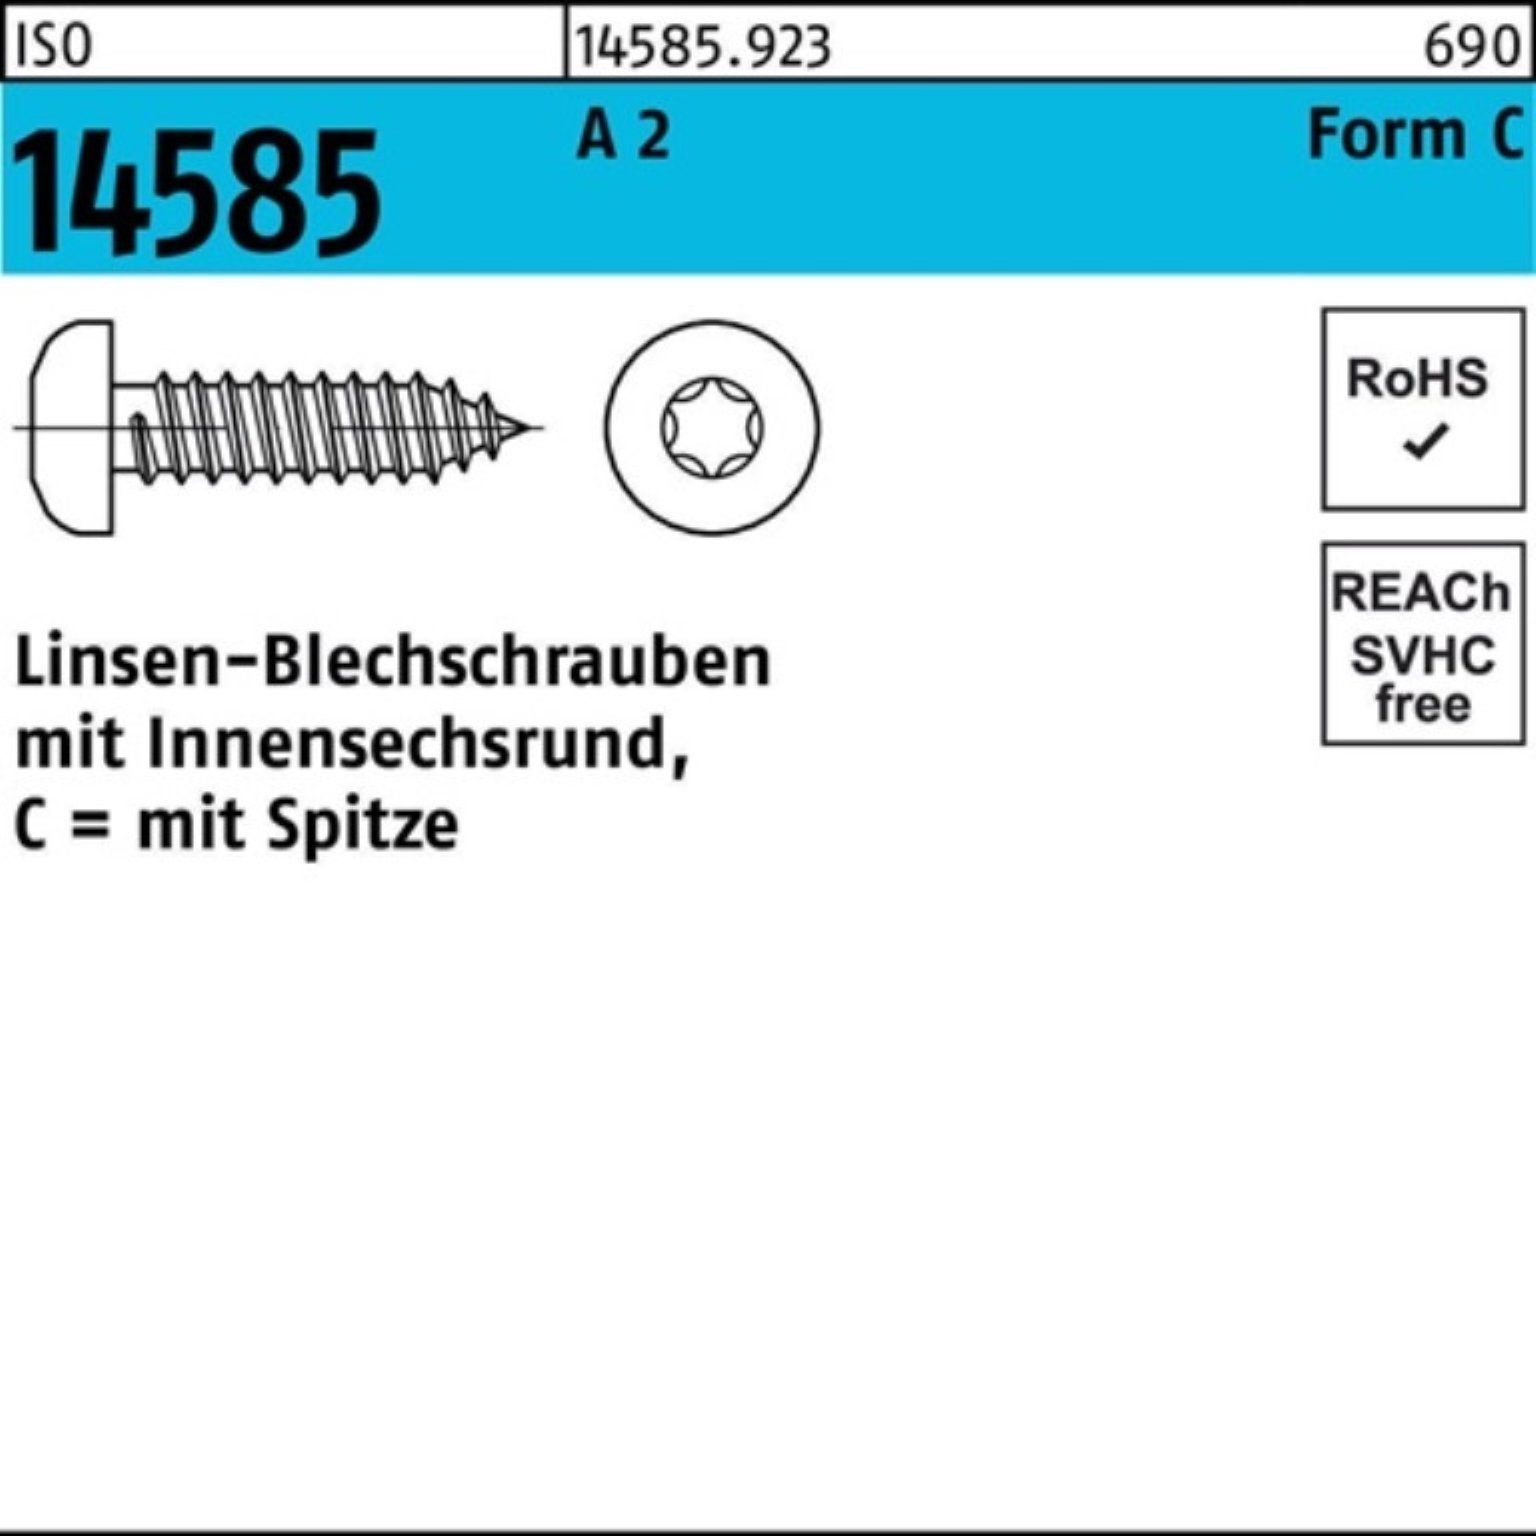 5,5x Reyher 250 Linsenblechschraube 2 14585 ISO Blechschraube -C T25 A Pack ISR 250er 45 St